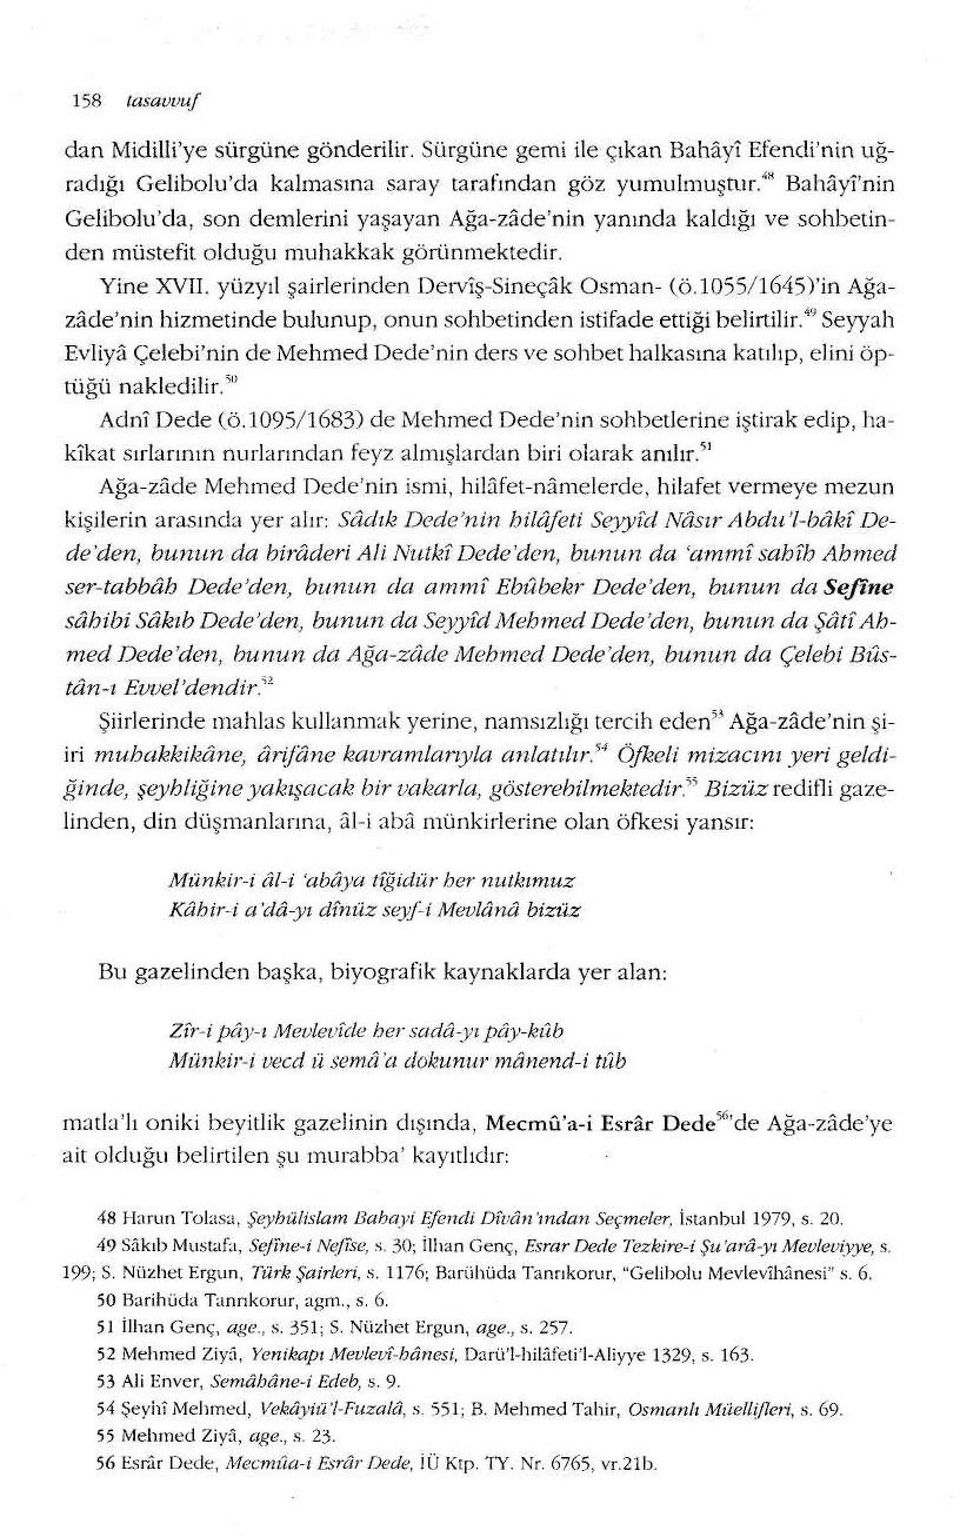 l055/ 1645)'in Ağazade'nin hizmetinde bulunup, onun sohbetinden istifade ettiği belirtilir.